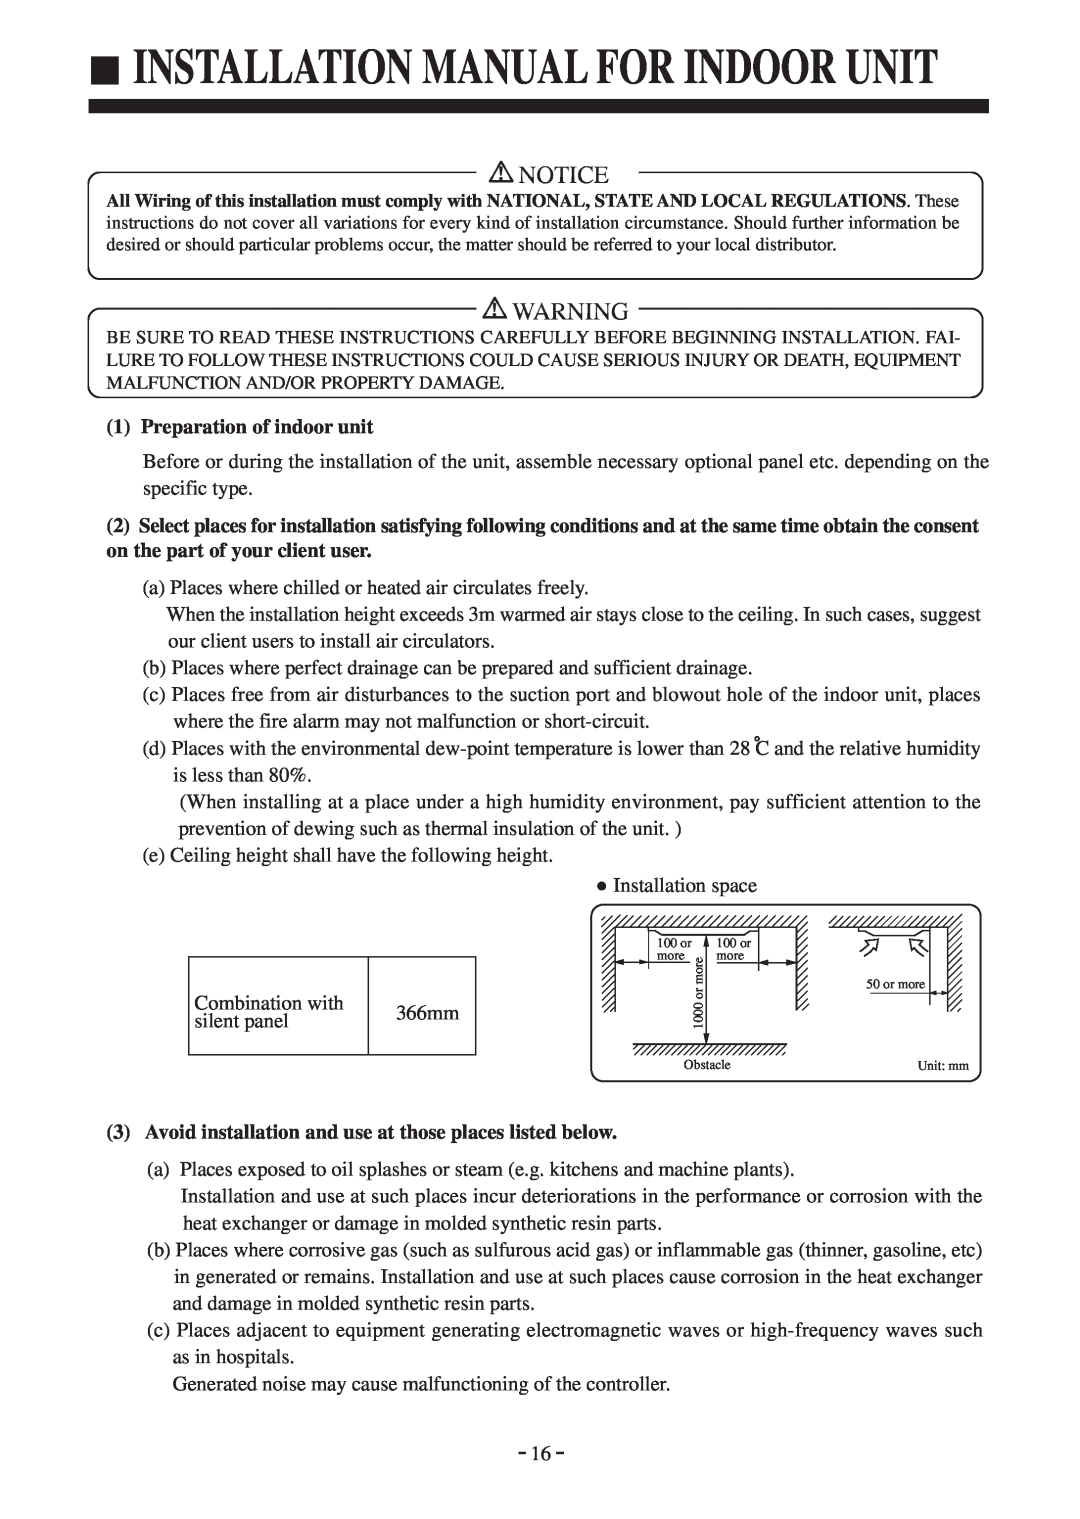 Haier AU142AFBIA, AD142AMBIA installation manual Installation Manual For Indoor Unit, Preparation of indoor unit 